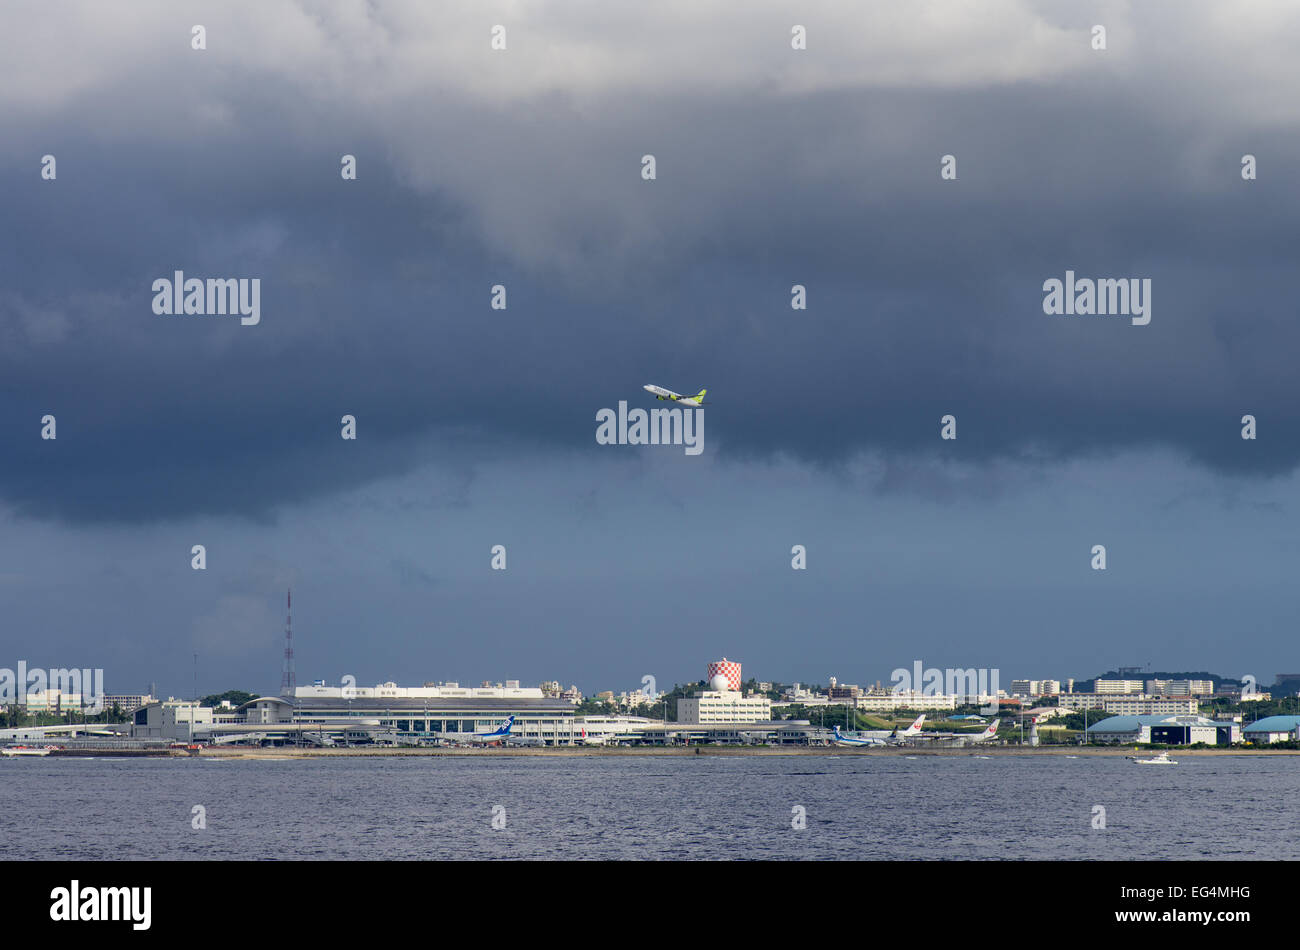 L'aéroport de Naha, vu de la mer avec un Solarseed au départ au cours de l'avion approche d'un typhon, Naha, Okinawa, Japon Banque D'Images